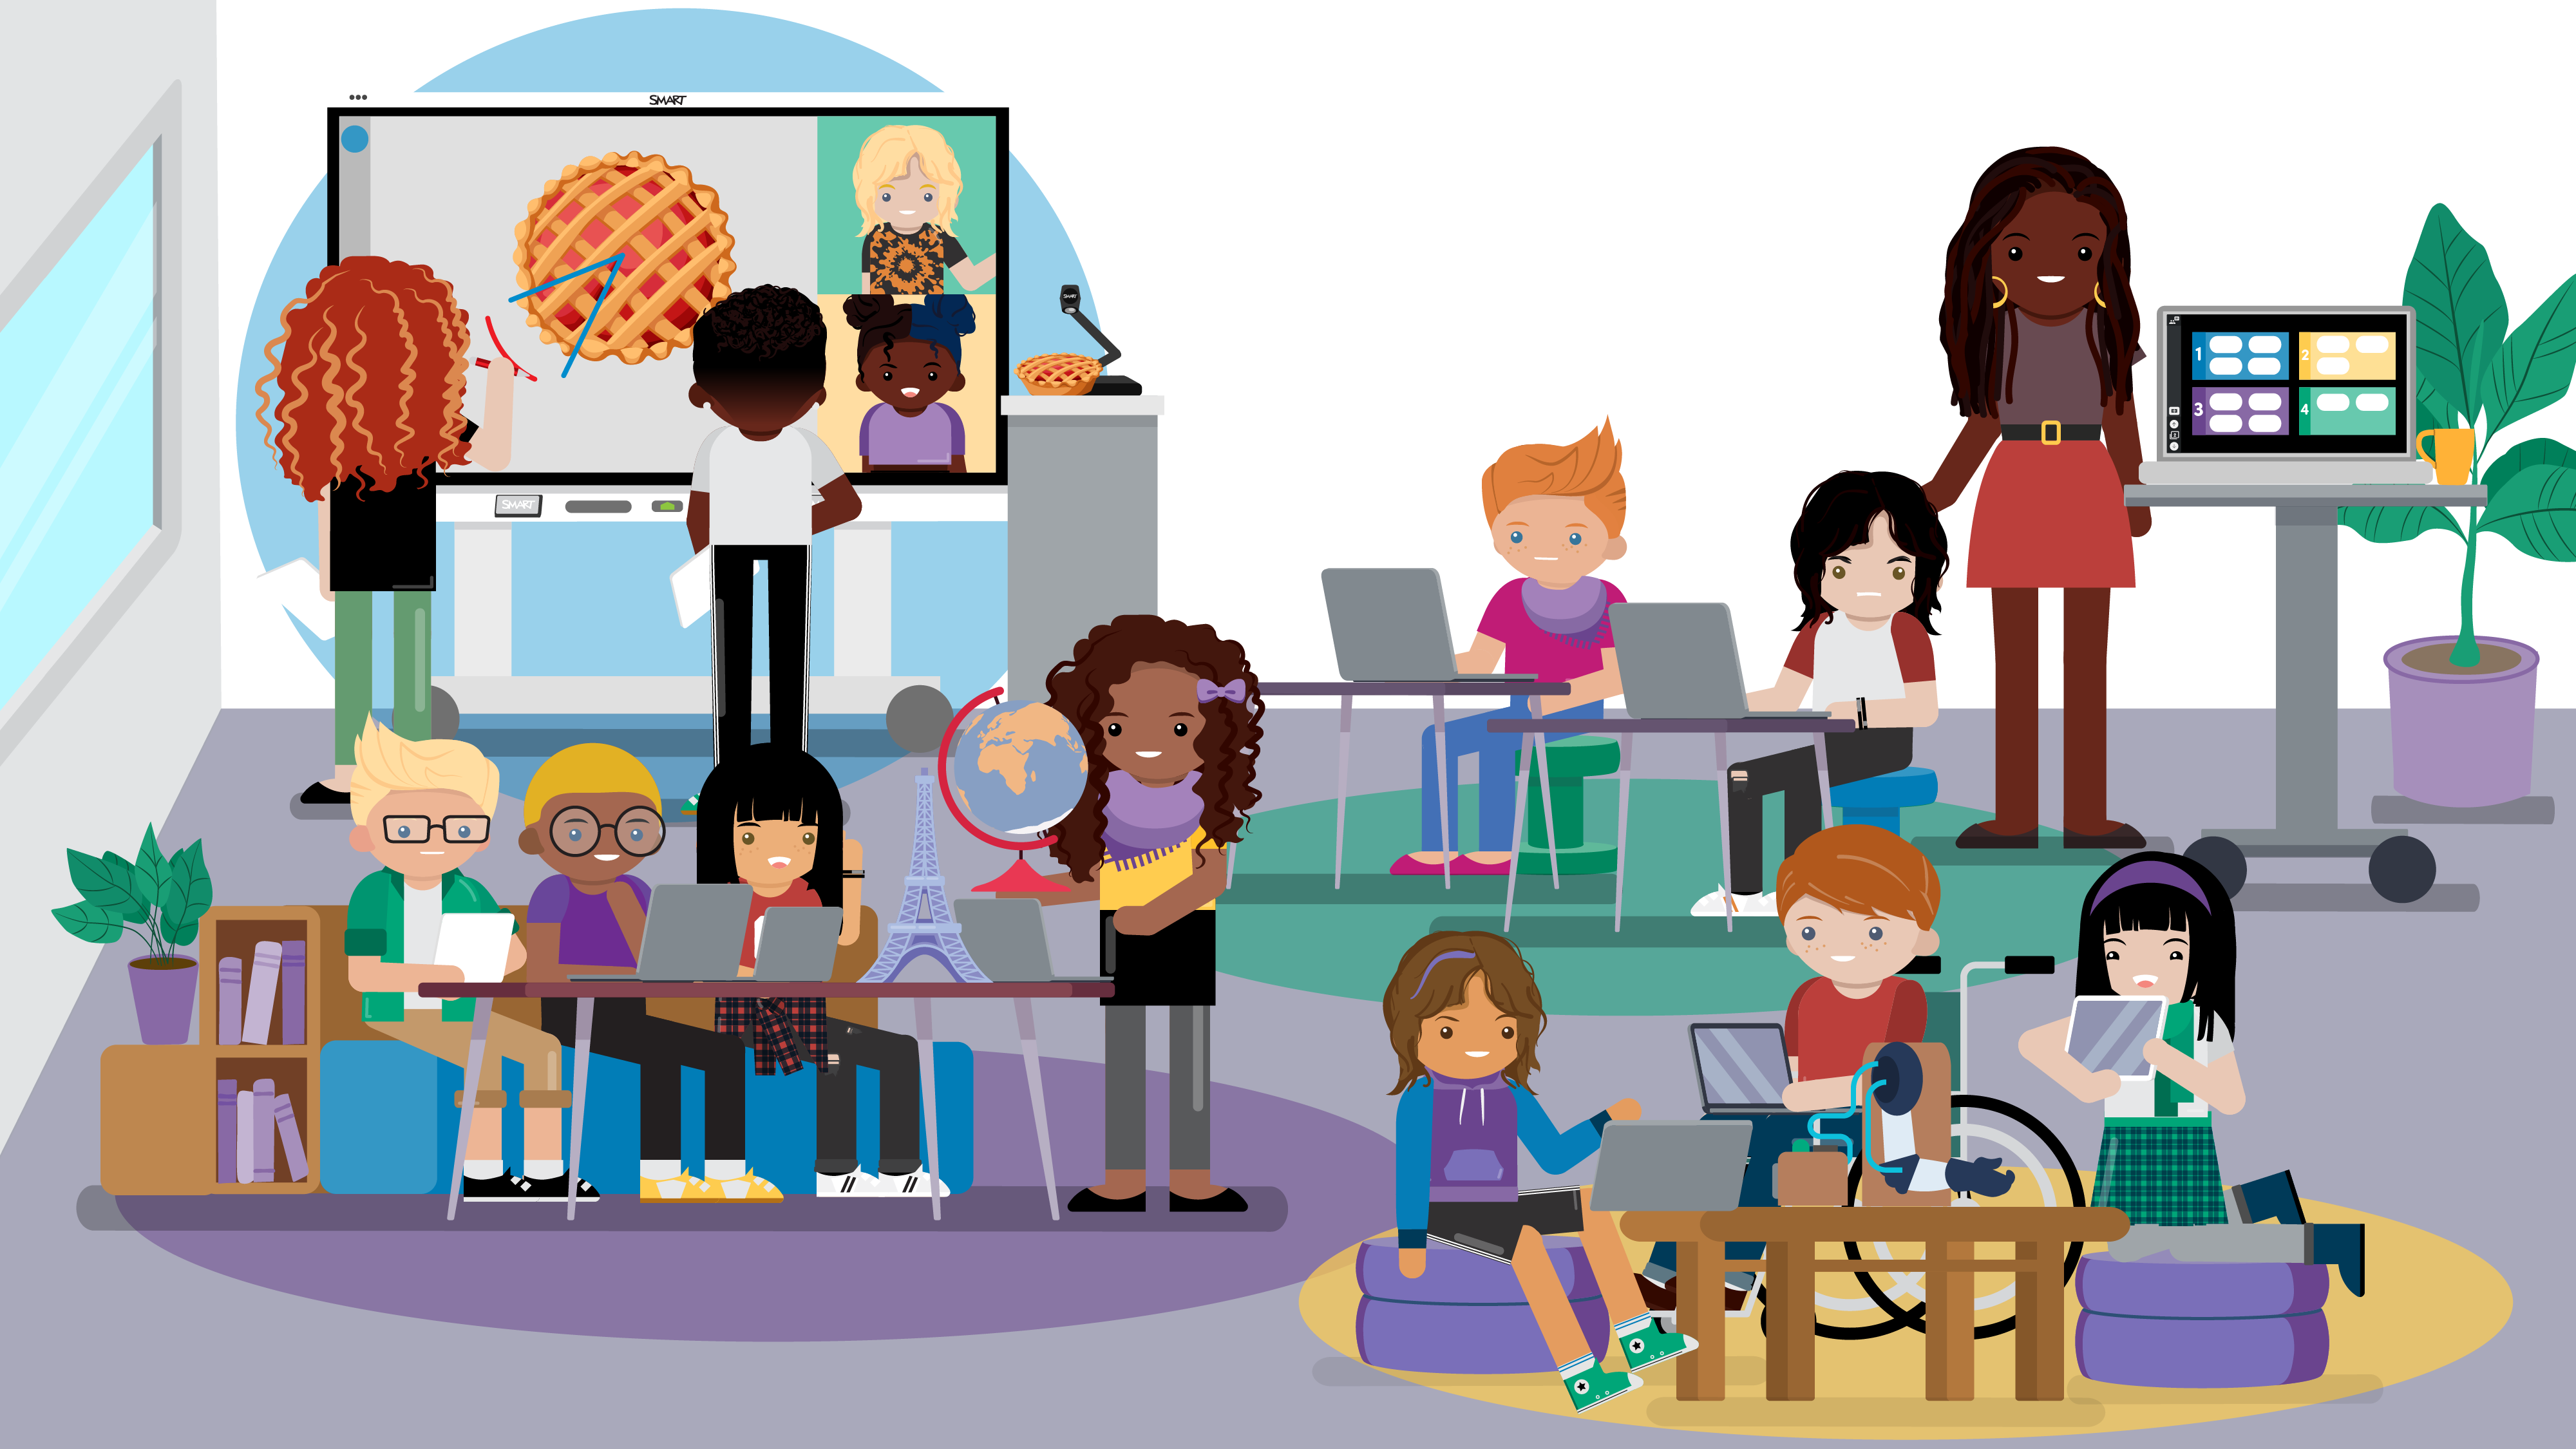 Image représentant une classe stylisée avec des élèves en autonomie et l’enseignante navigant entre les différents groupes afin de faciliter la réussite des élèves